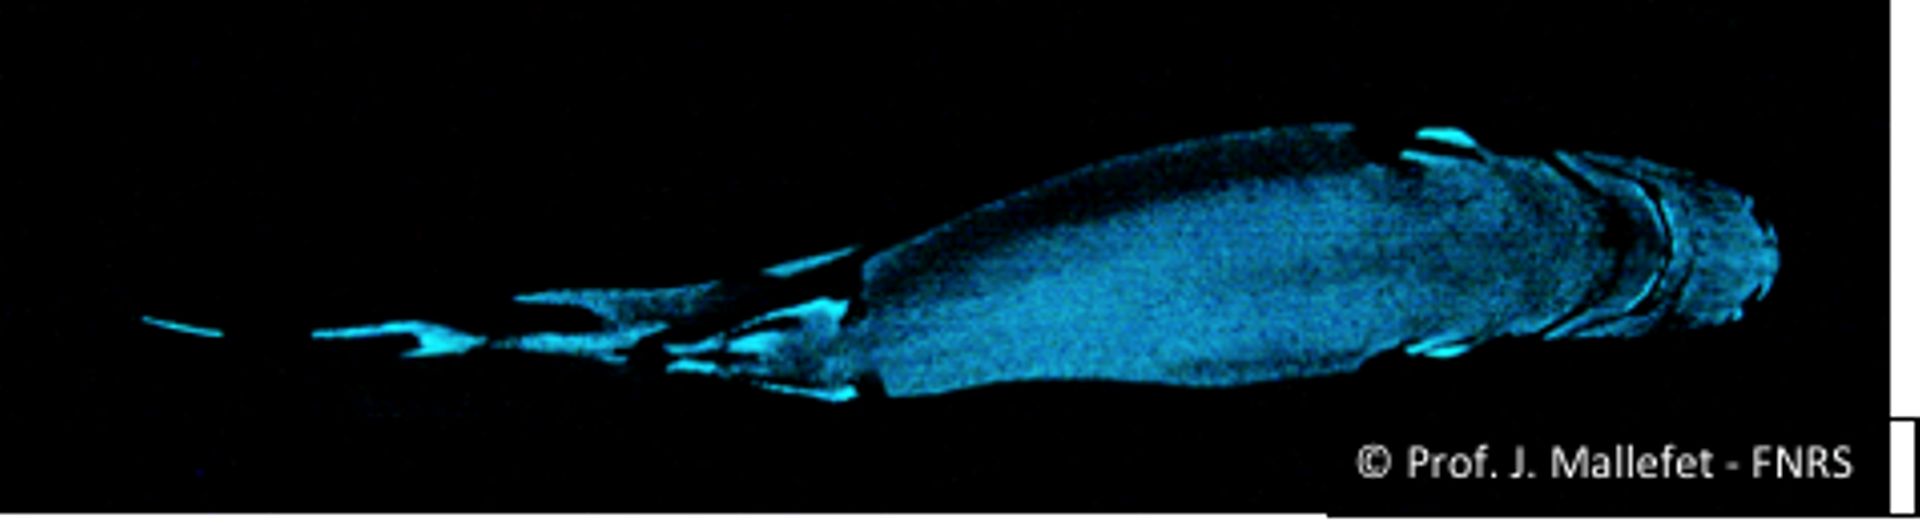 Etmopterus spinax: Photographie de la bioluminescence ventrale de ce requin lanterne. Pour les besoins de la photographie, le requin a été totalement placé dans le noir. Dans la nature ce requin, vivant entre 70 et 250 m de profondeur dans les Fjords norv